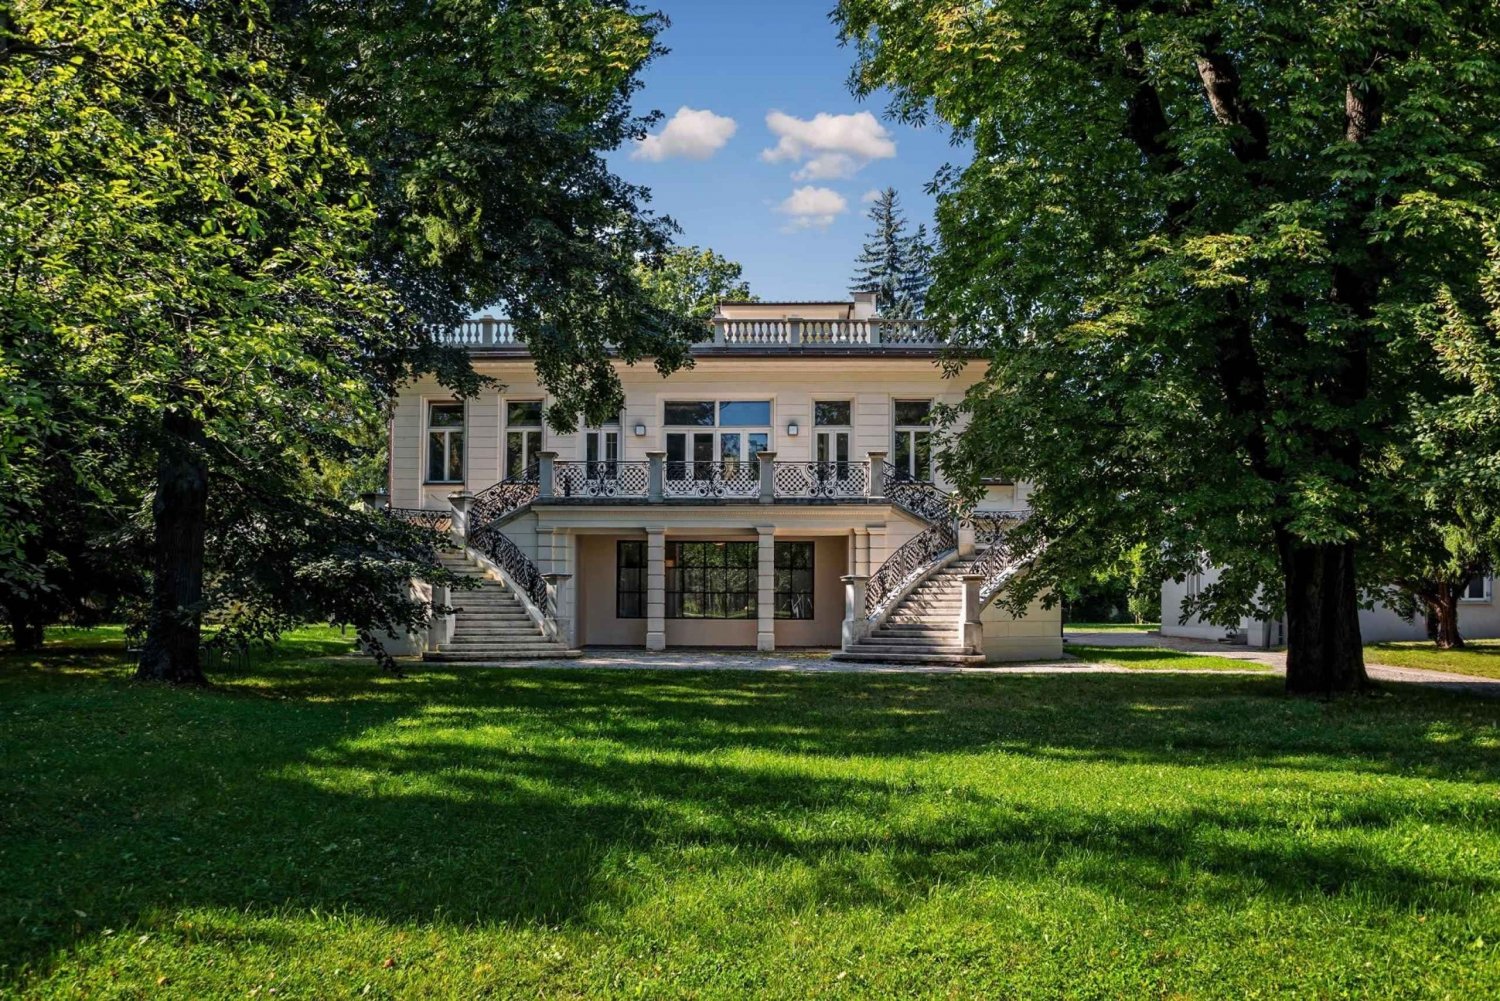 Vienne : billet d'entrée pour la Villa Klimt et l'Atelier Gustav Klimt